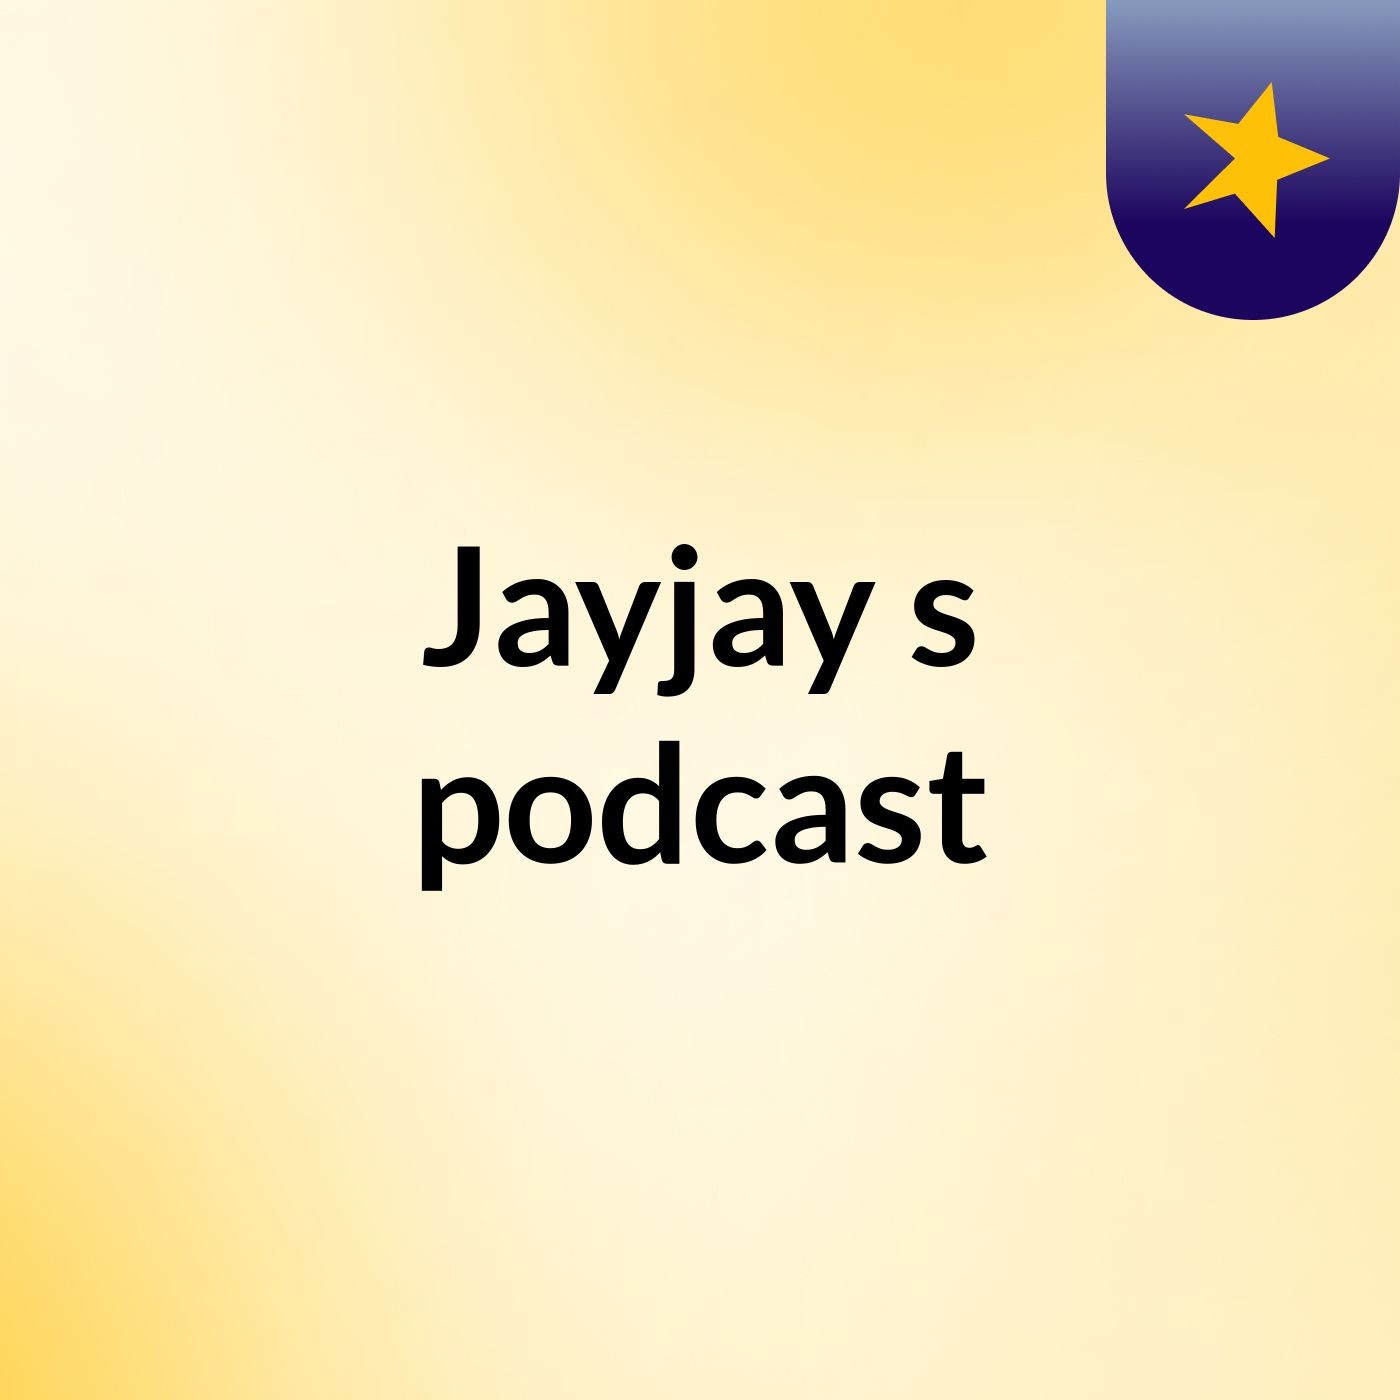 Jayjay's podcast